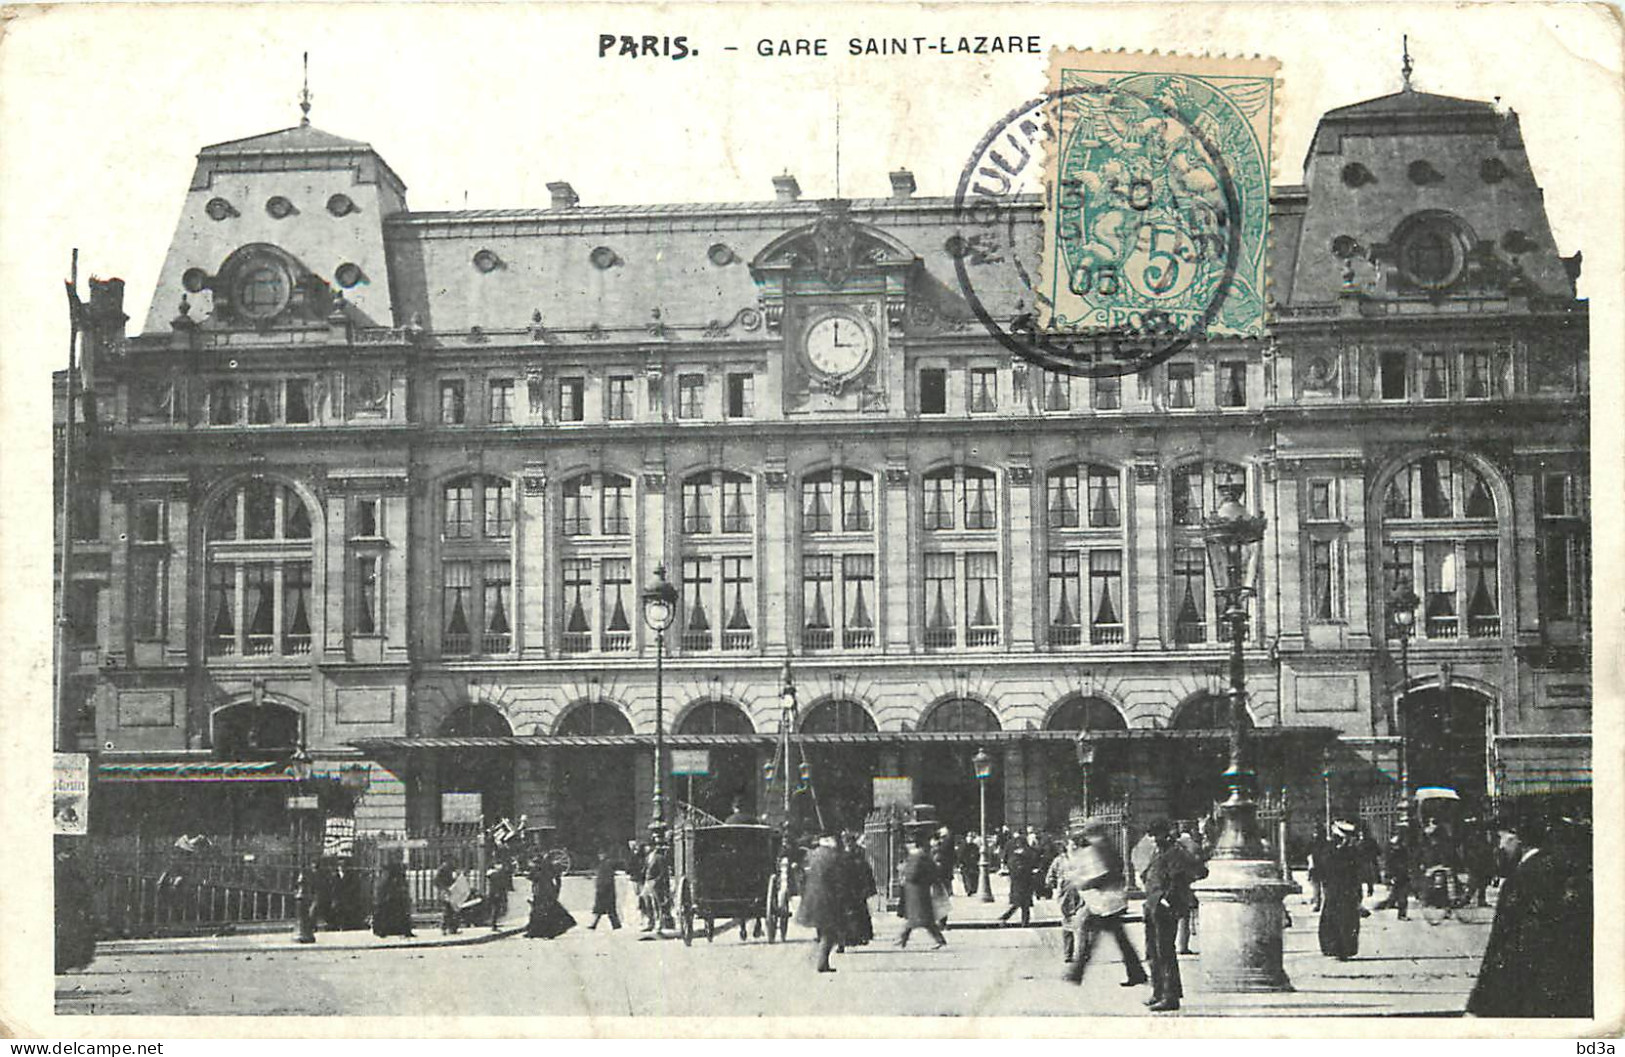  75   PARIS    GARE  SAINT LAZARE  - Métro Parisien, Gares